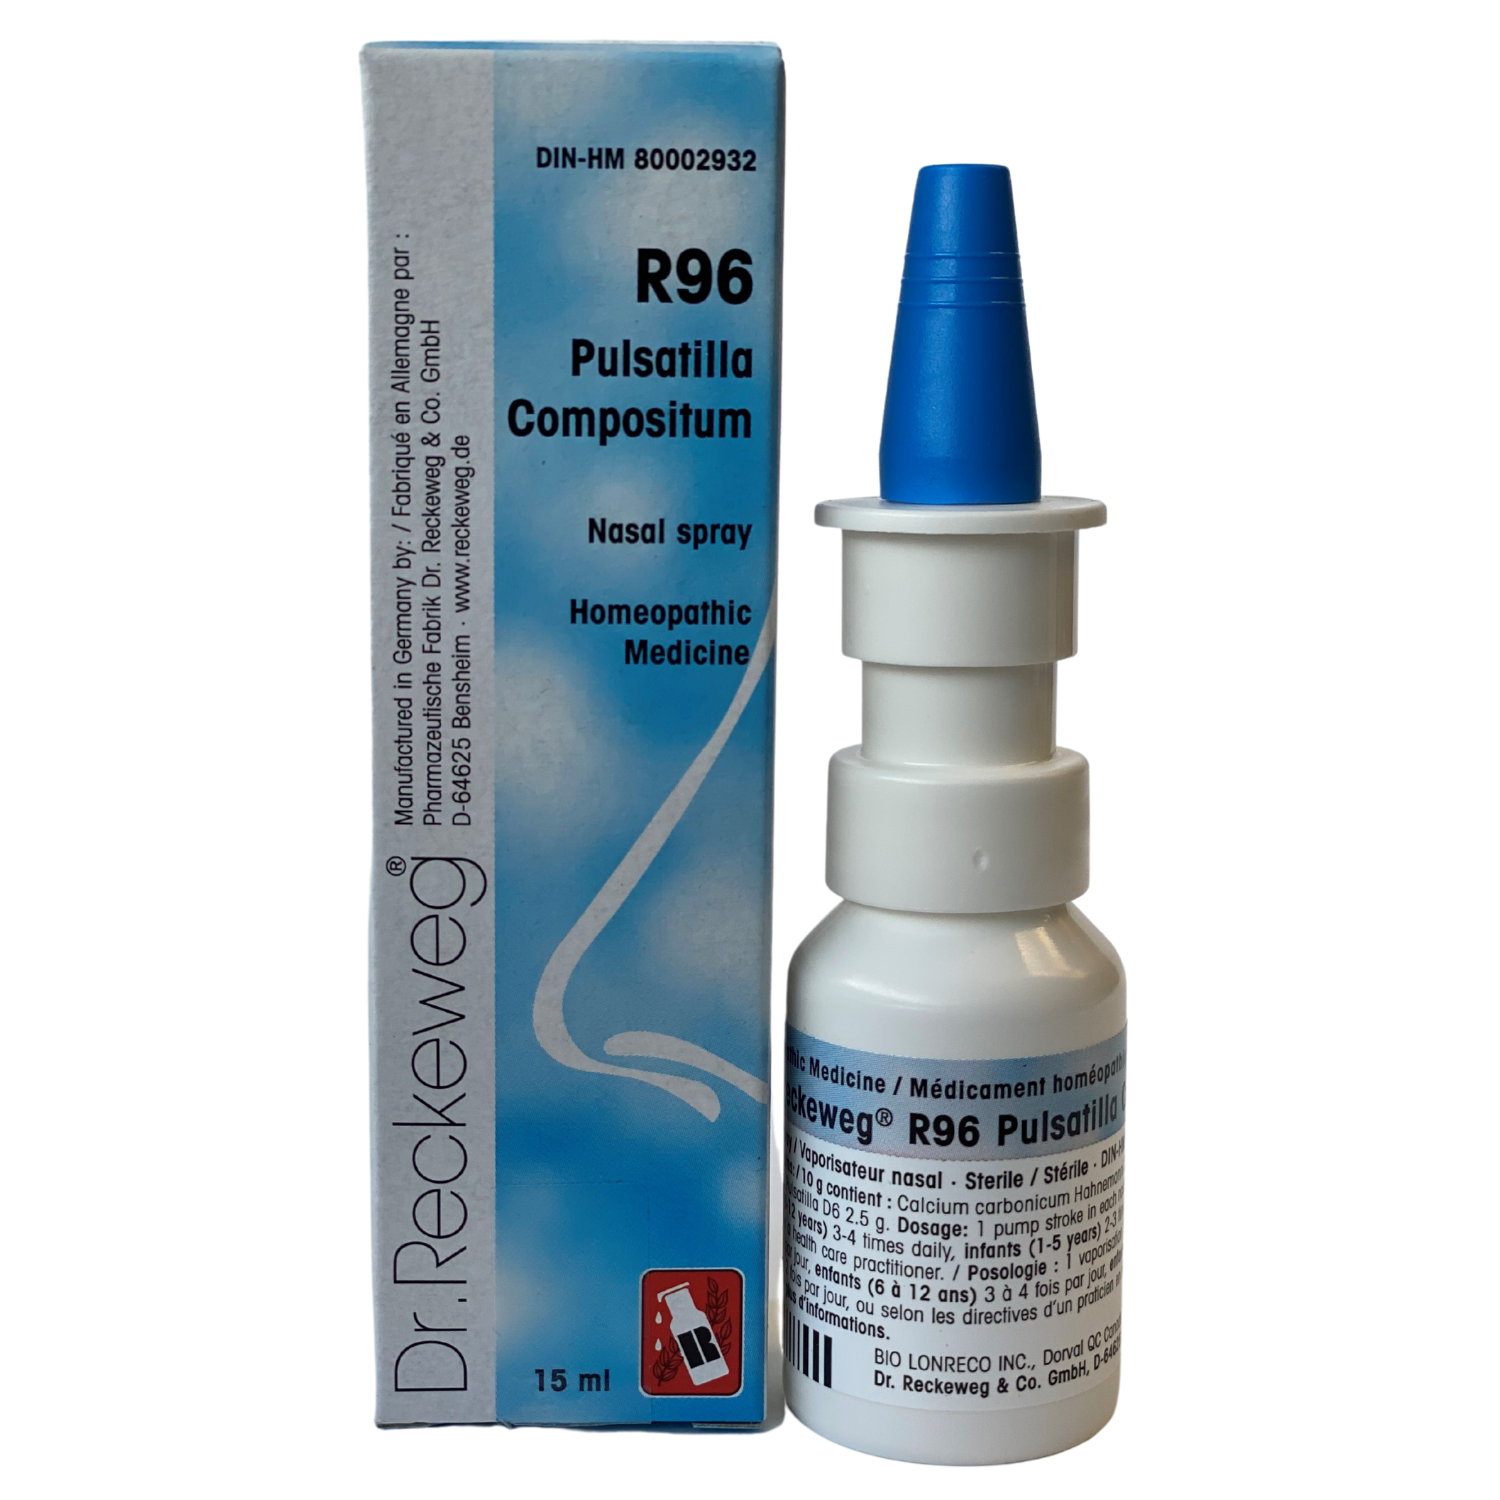 R96 Pulsatilla Compositum Nasal Spray 15ml, Dr. Reckeweg